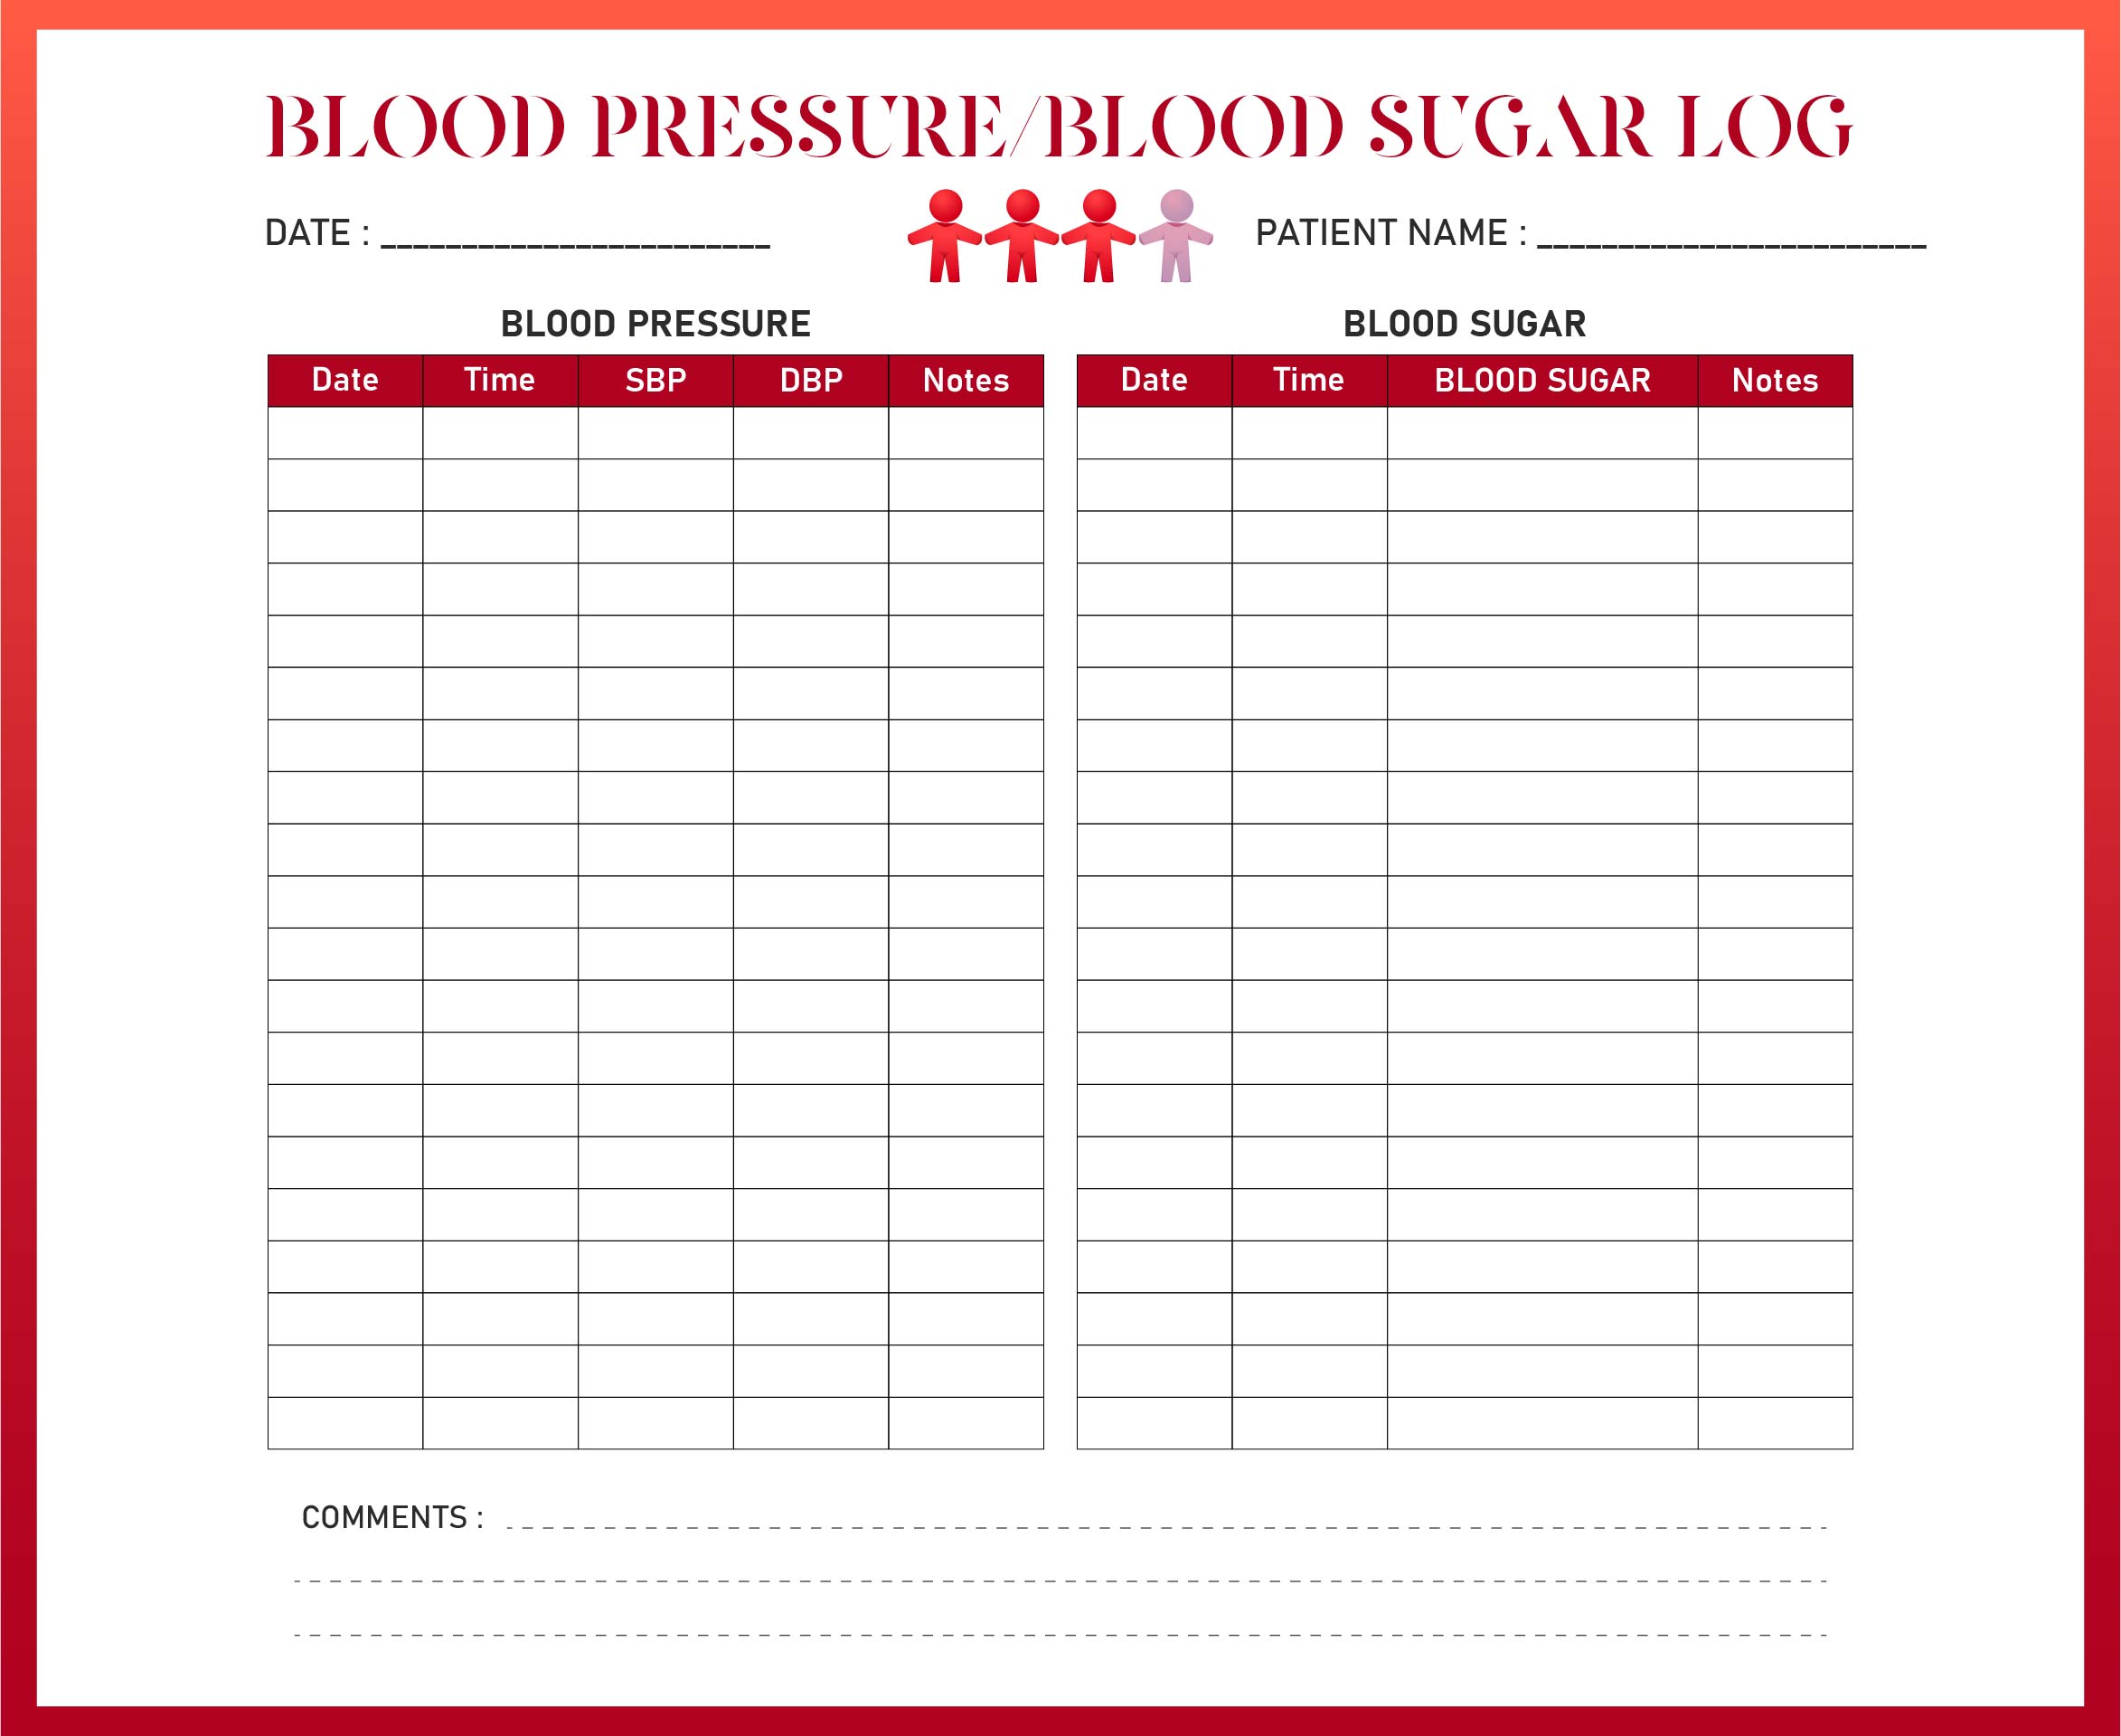 Blood Pressure Log Printable